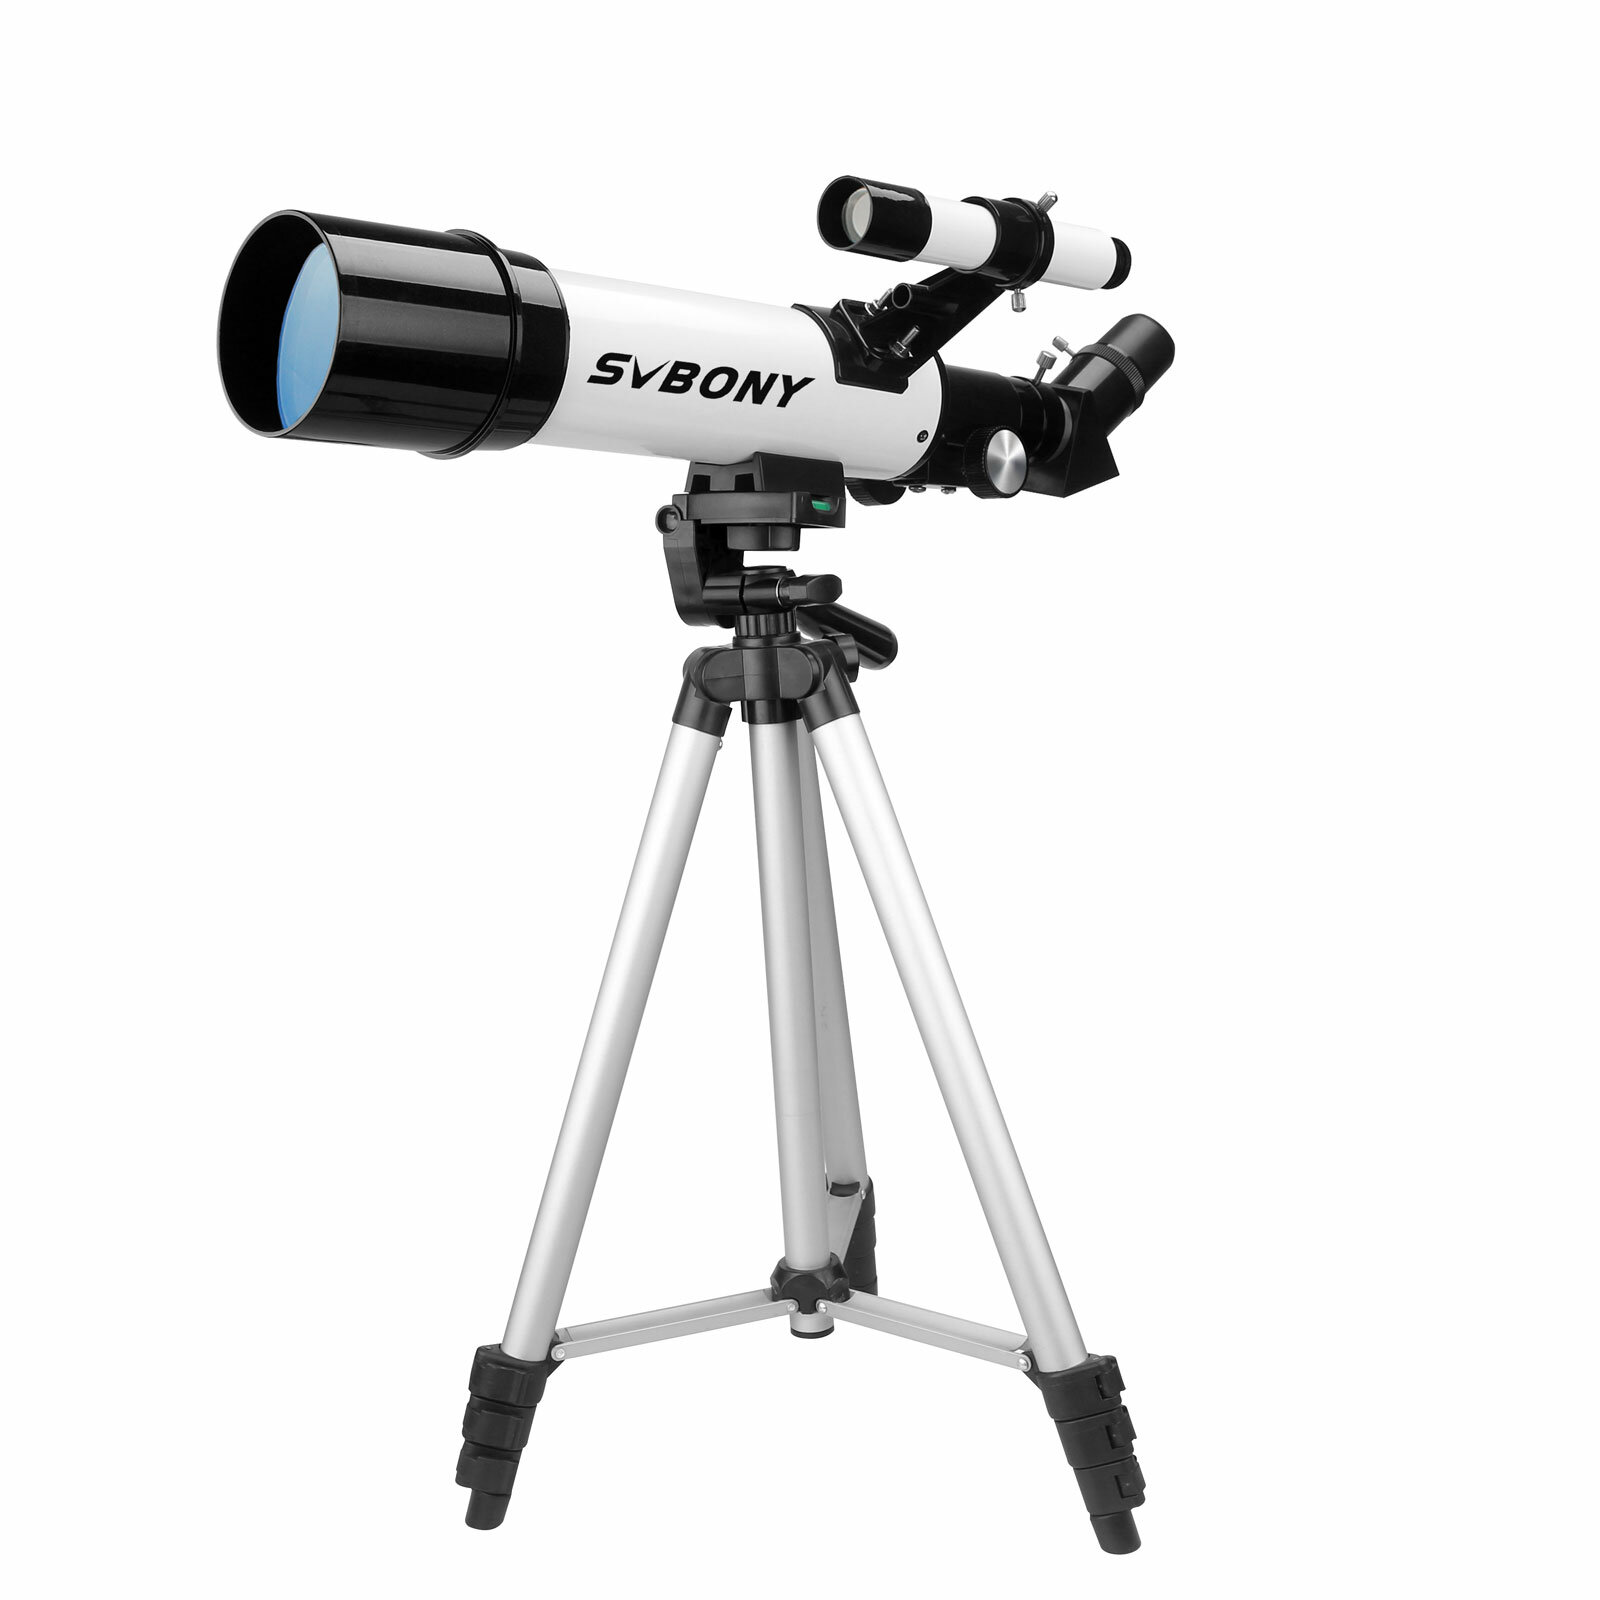 Рефракторный астрономический телескоп SVBONY SV501P 60/400 мм с кронштейном для окуляра для начинающих взрослых на открытом воздухе.